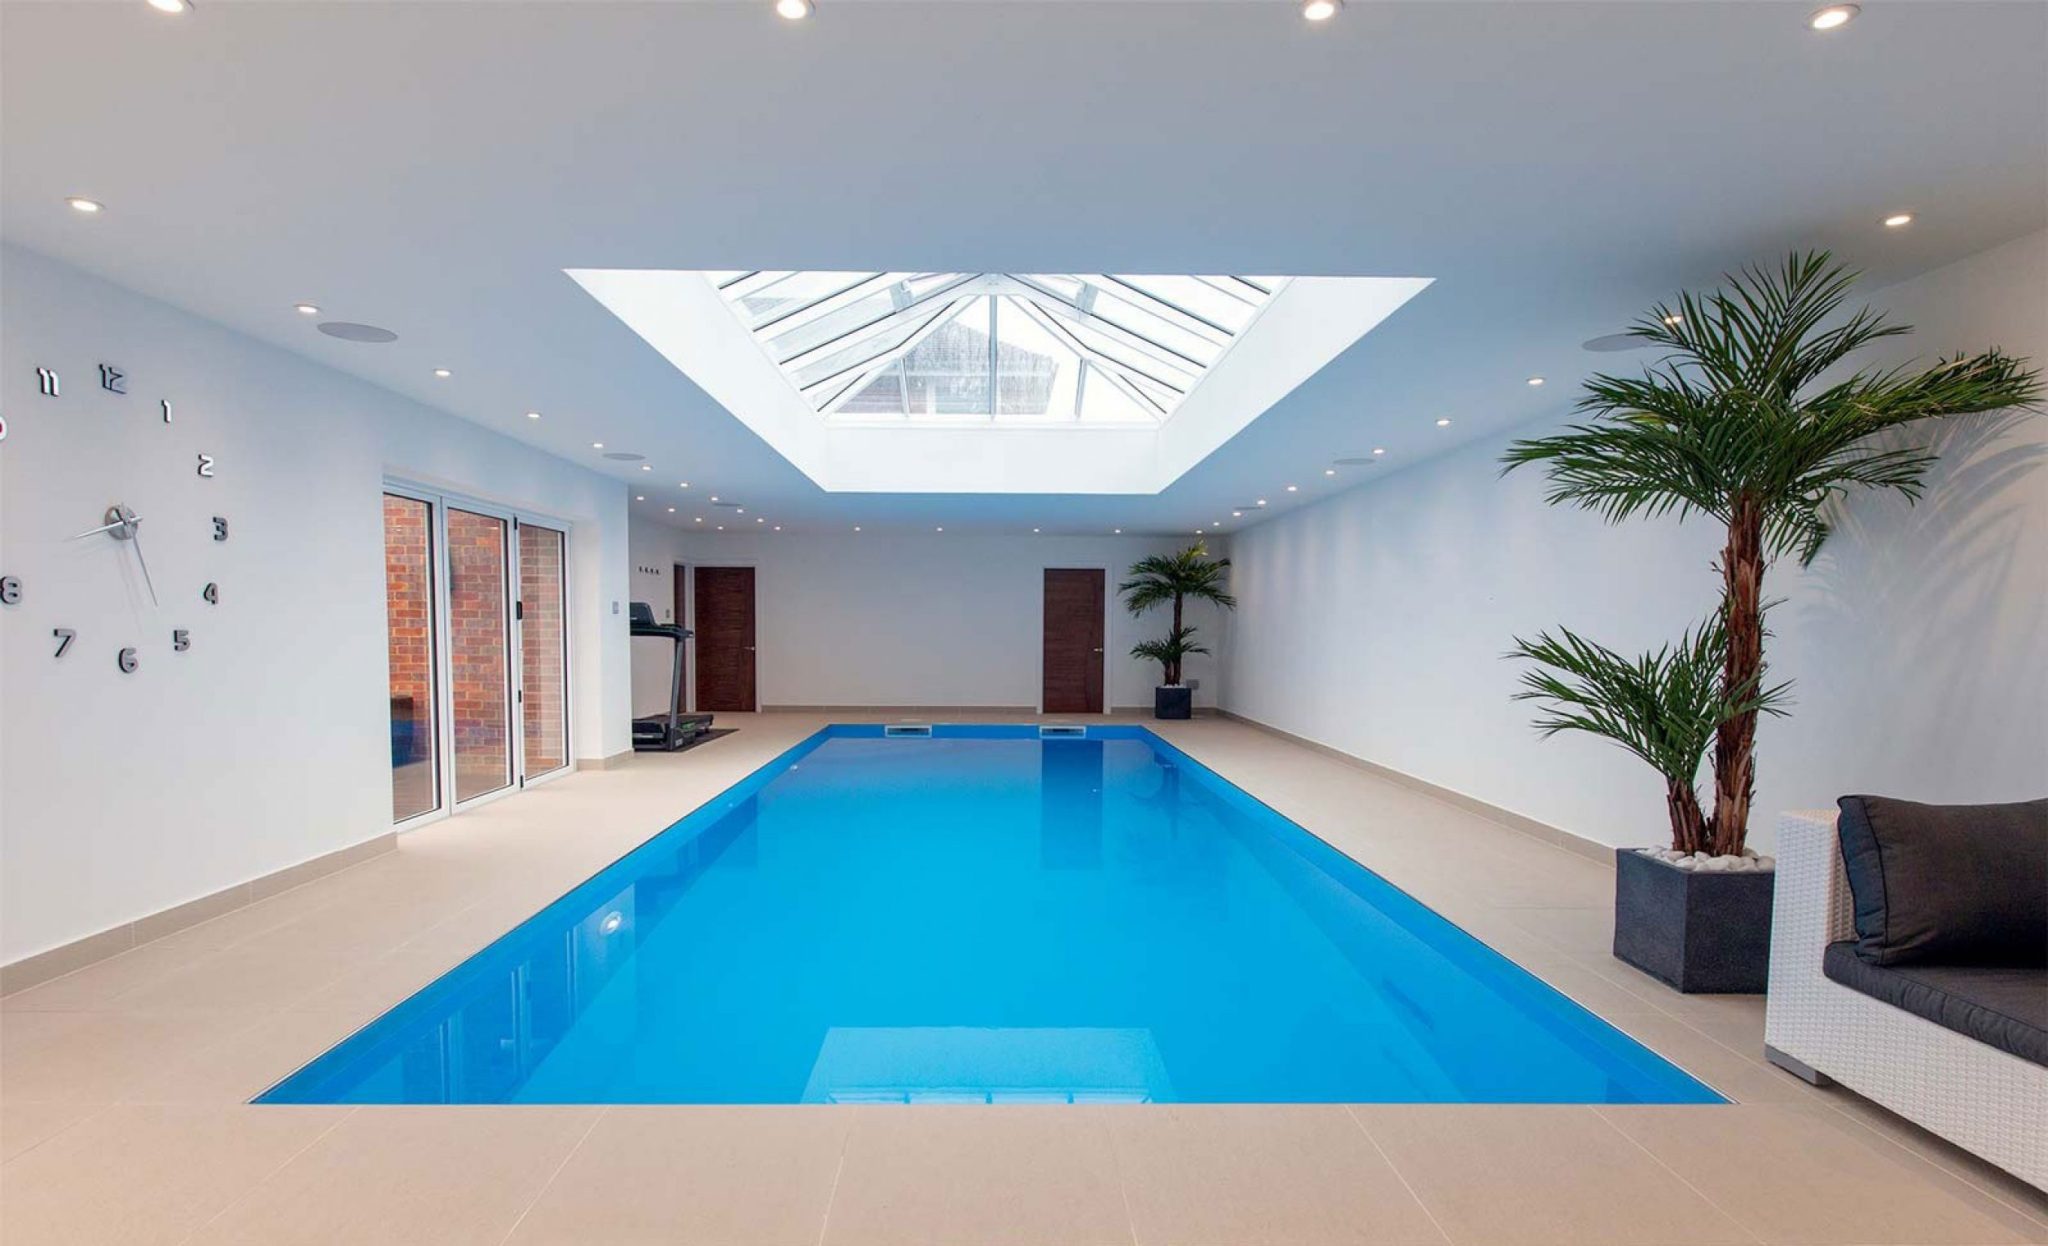 Indoor-pool